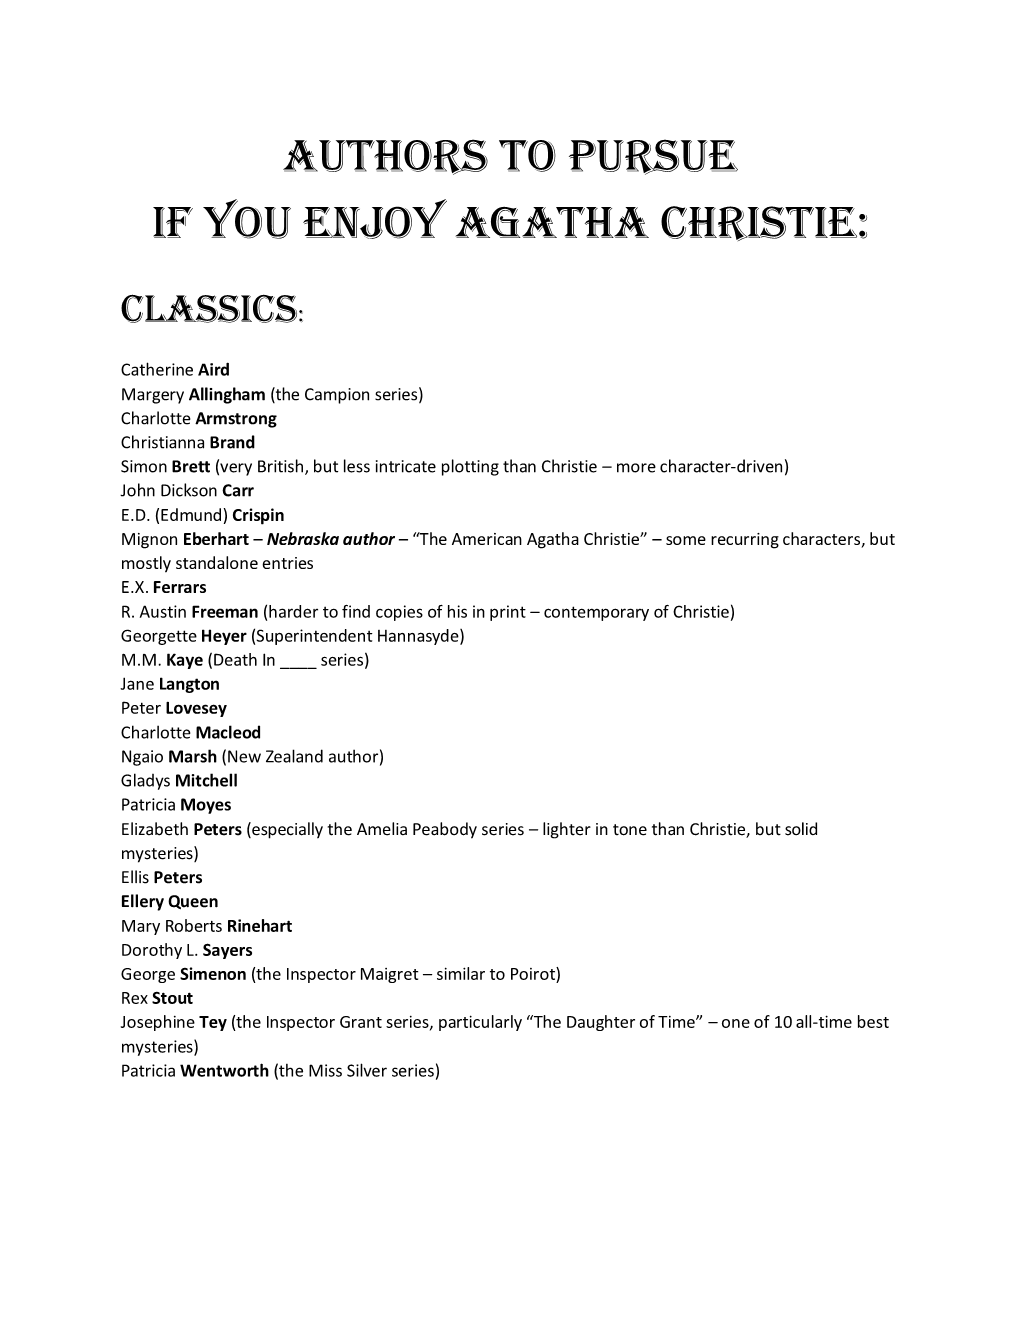 Agatha Christie Readalikes